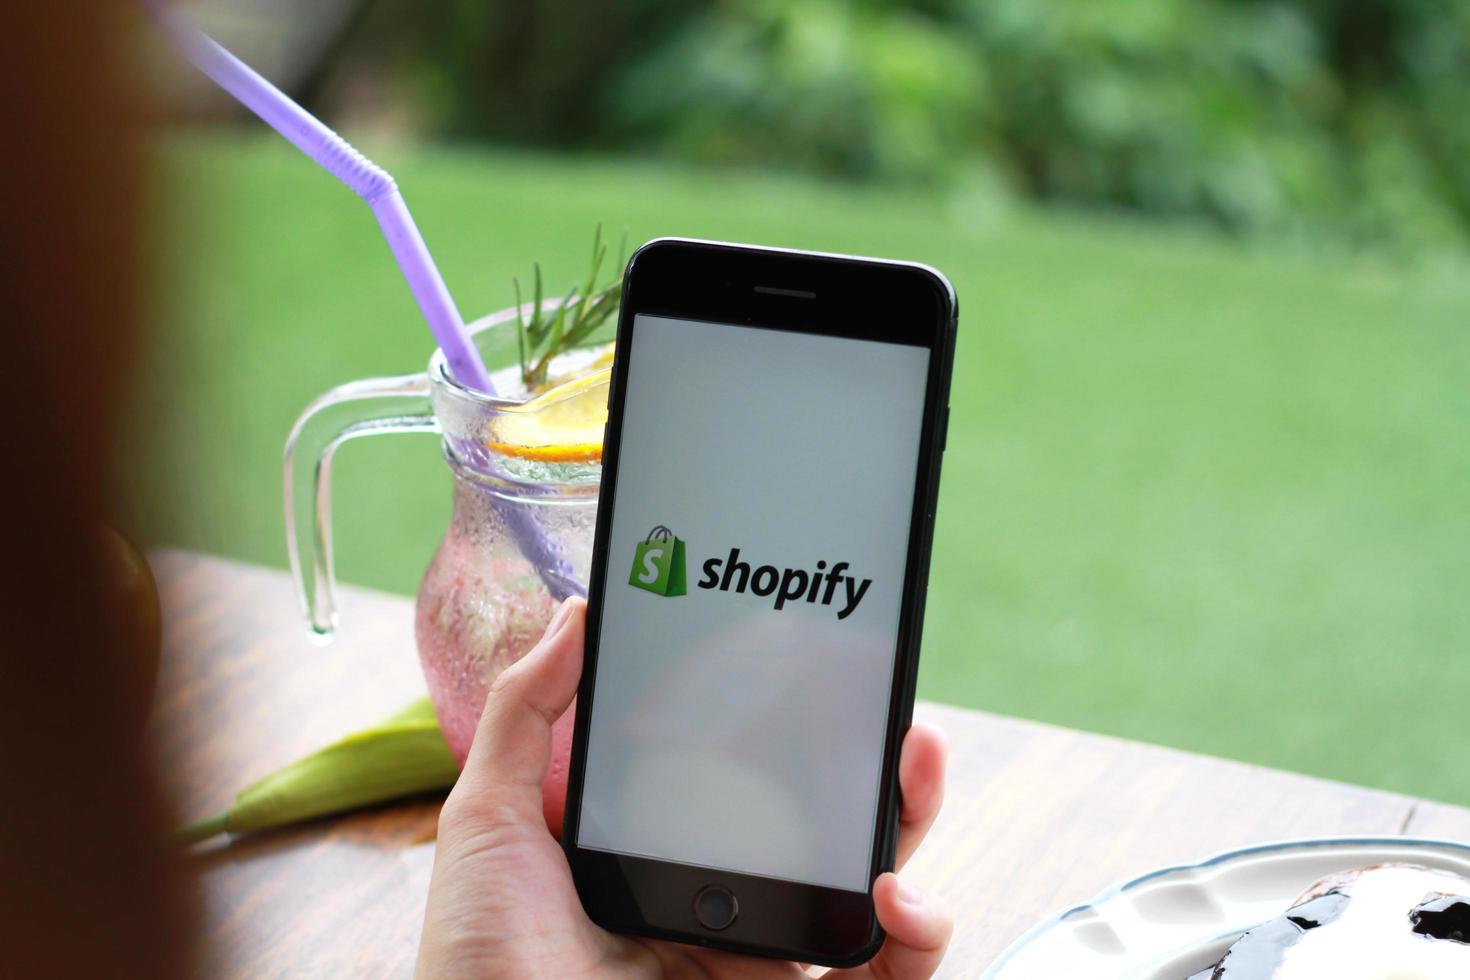 chiang mai, tailândia - 11 de julho de 2020 - uma mulher segura iphone 7 plus com o aplicativo shopify na tela de uma padaria e cafeteria. shopify é uma plataforma de e-commerce para lojas online. foto